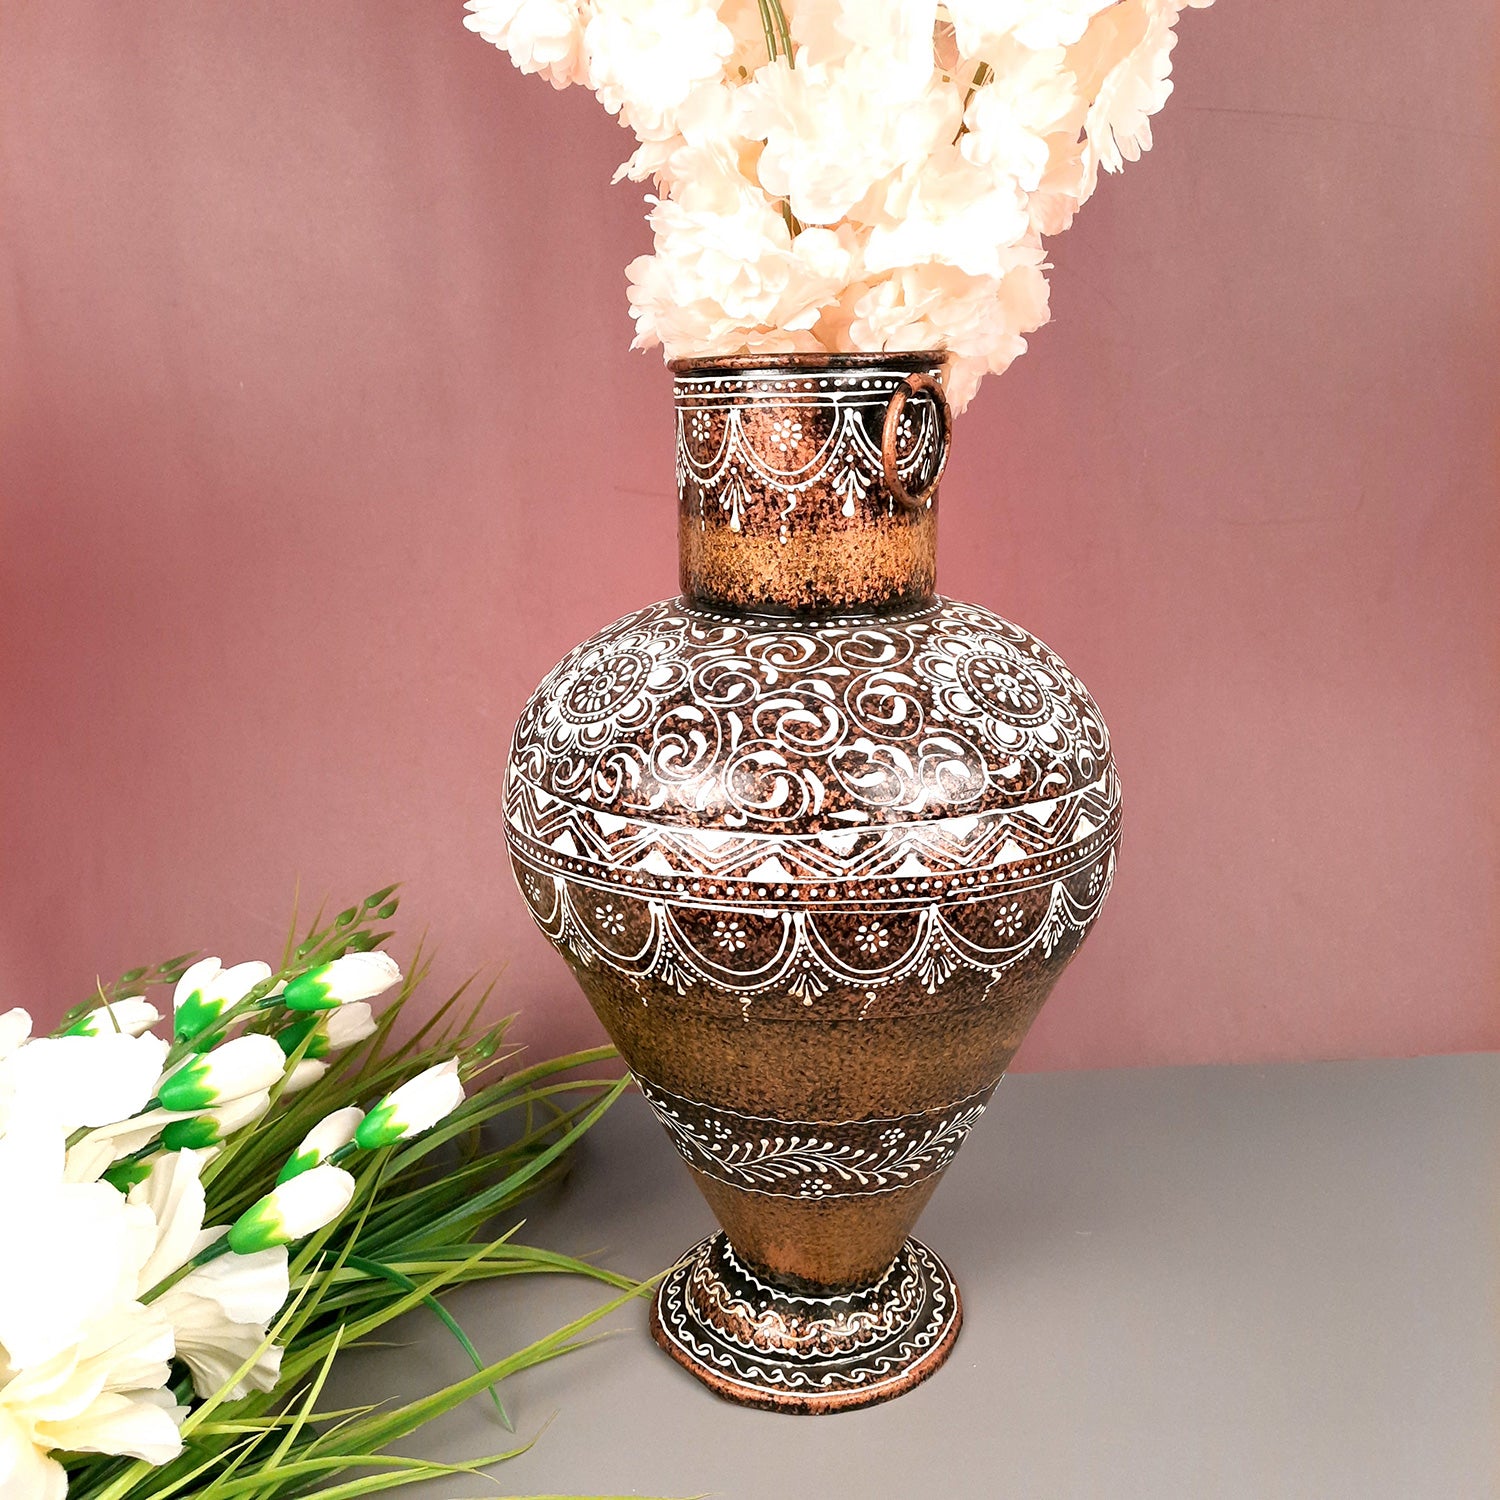 Big Flower Vase | Decorative Vase For Corners & Entrance - For Living Room & Home Decor - Apkamart